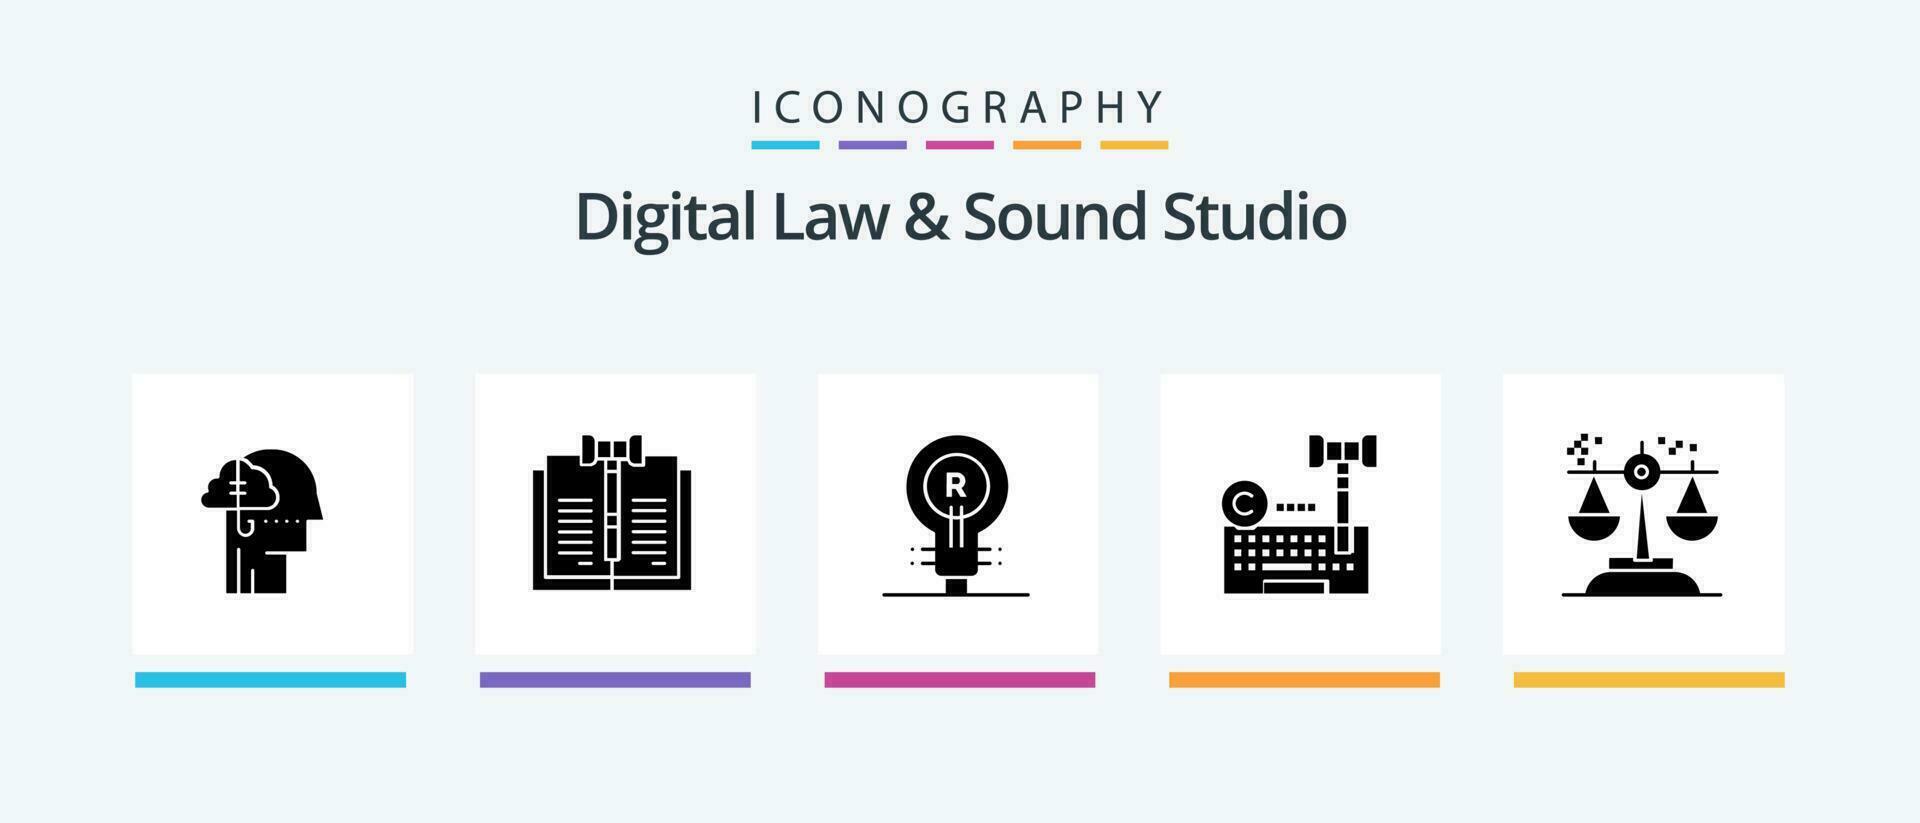 Digital Gesetz und Klang Studio Glyphe 5 Symbol Pack einschließlich Internet. Urheberrechte ©. Gesetz. Logo. echt. kreativ Symbole Design vektor